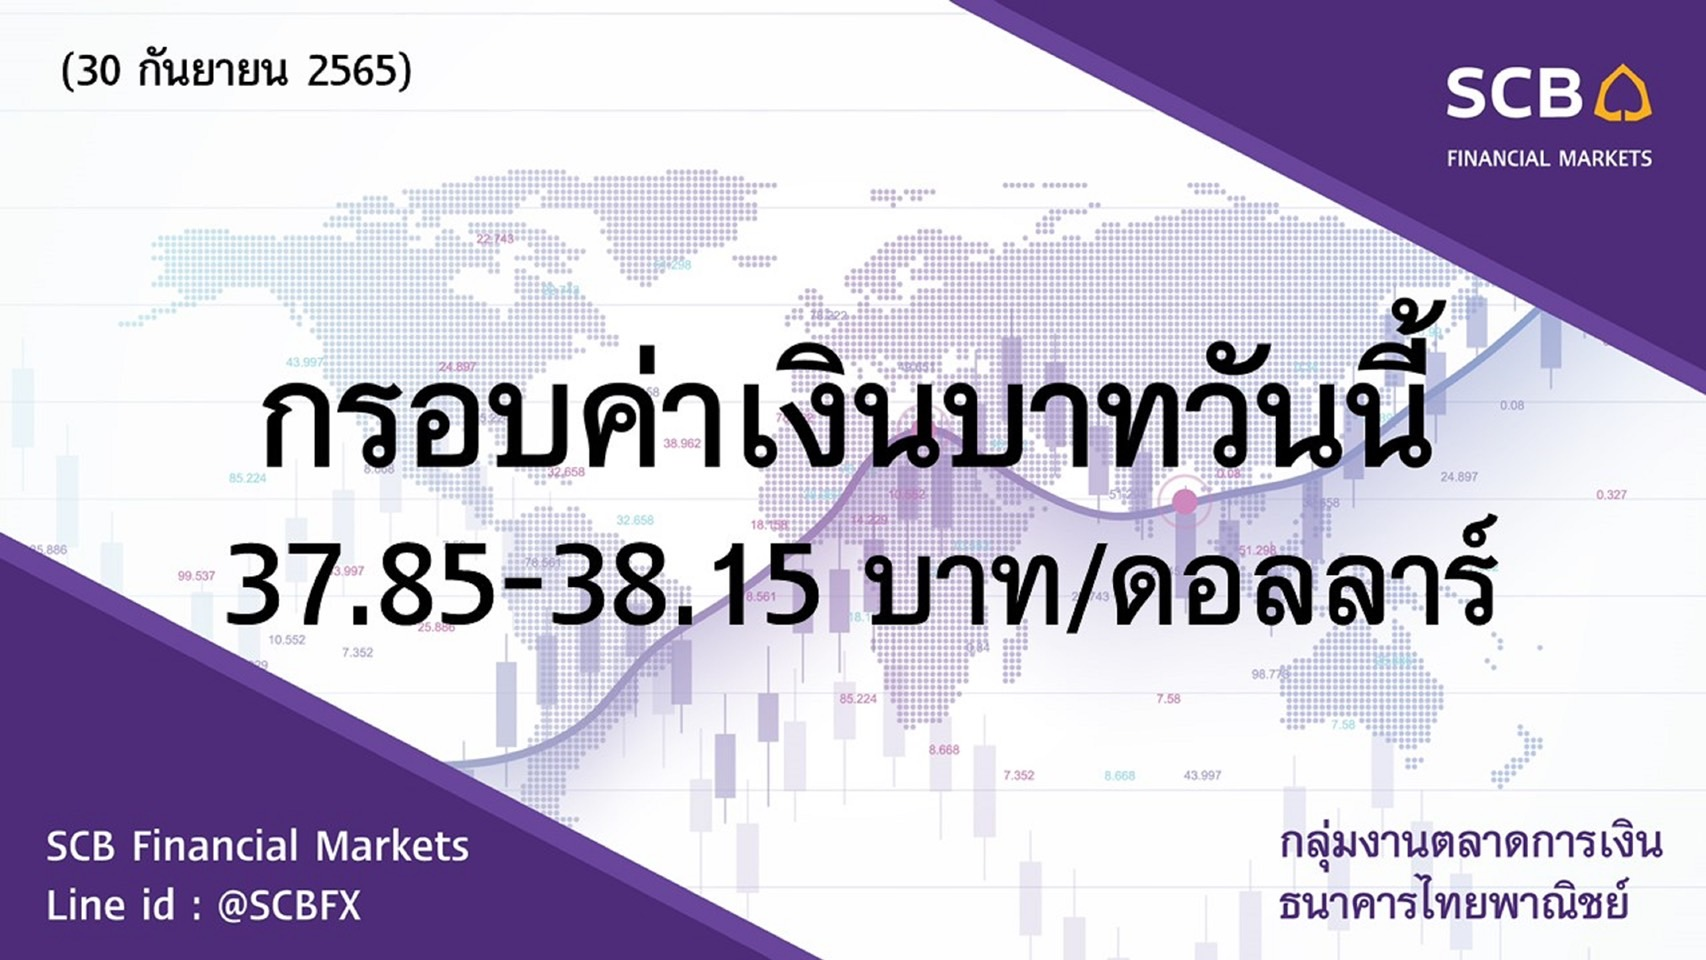 กลุ่มงานตลาดการเงิน ธนาคารไทยพาณิชย์ (SCB Financial Markets) ค่าเงินบาทประจำวันที่ 30 กันยายน 2565